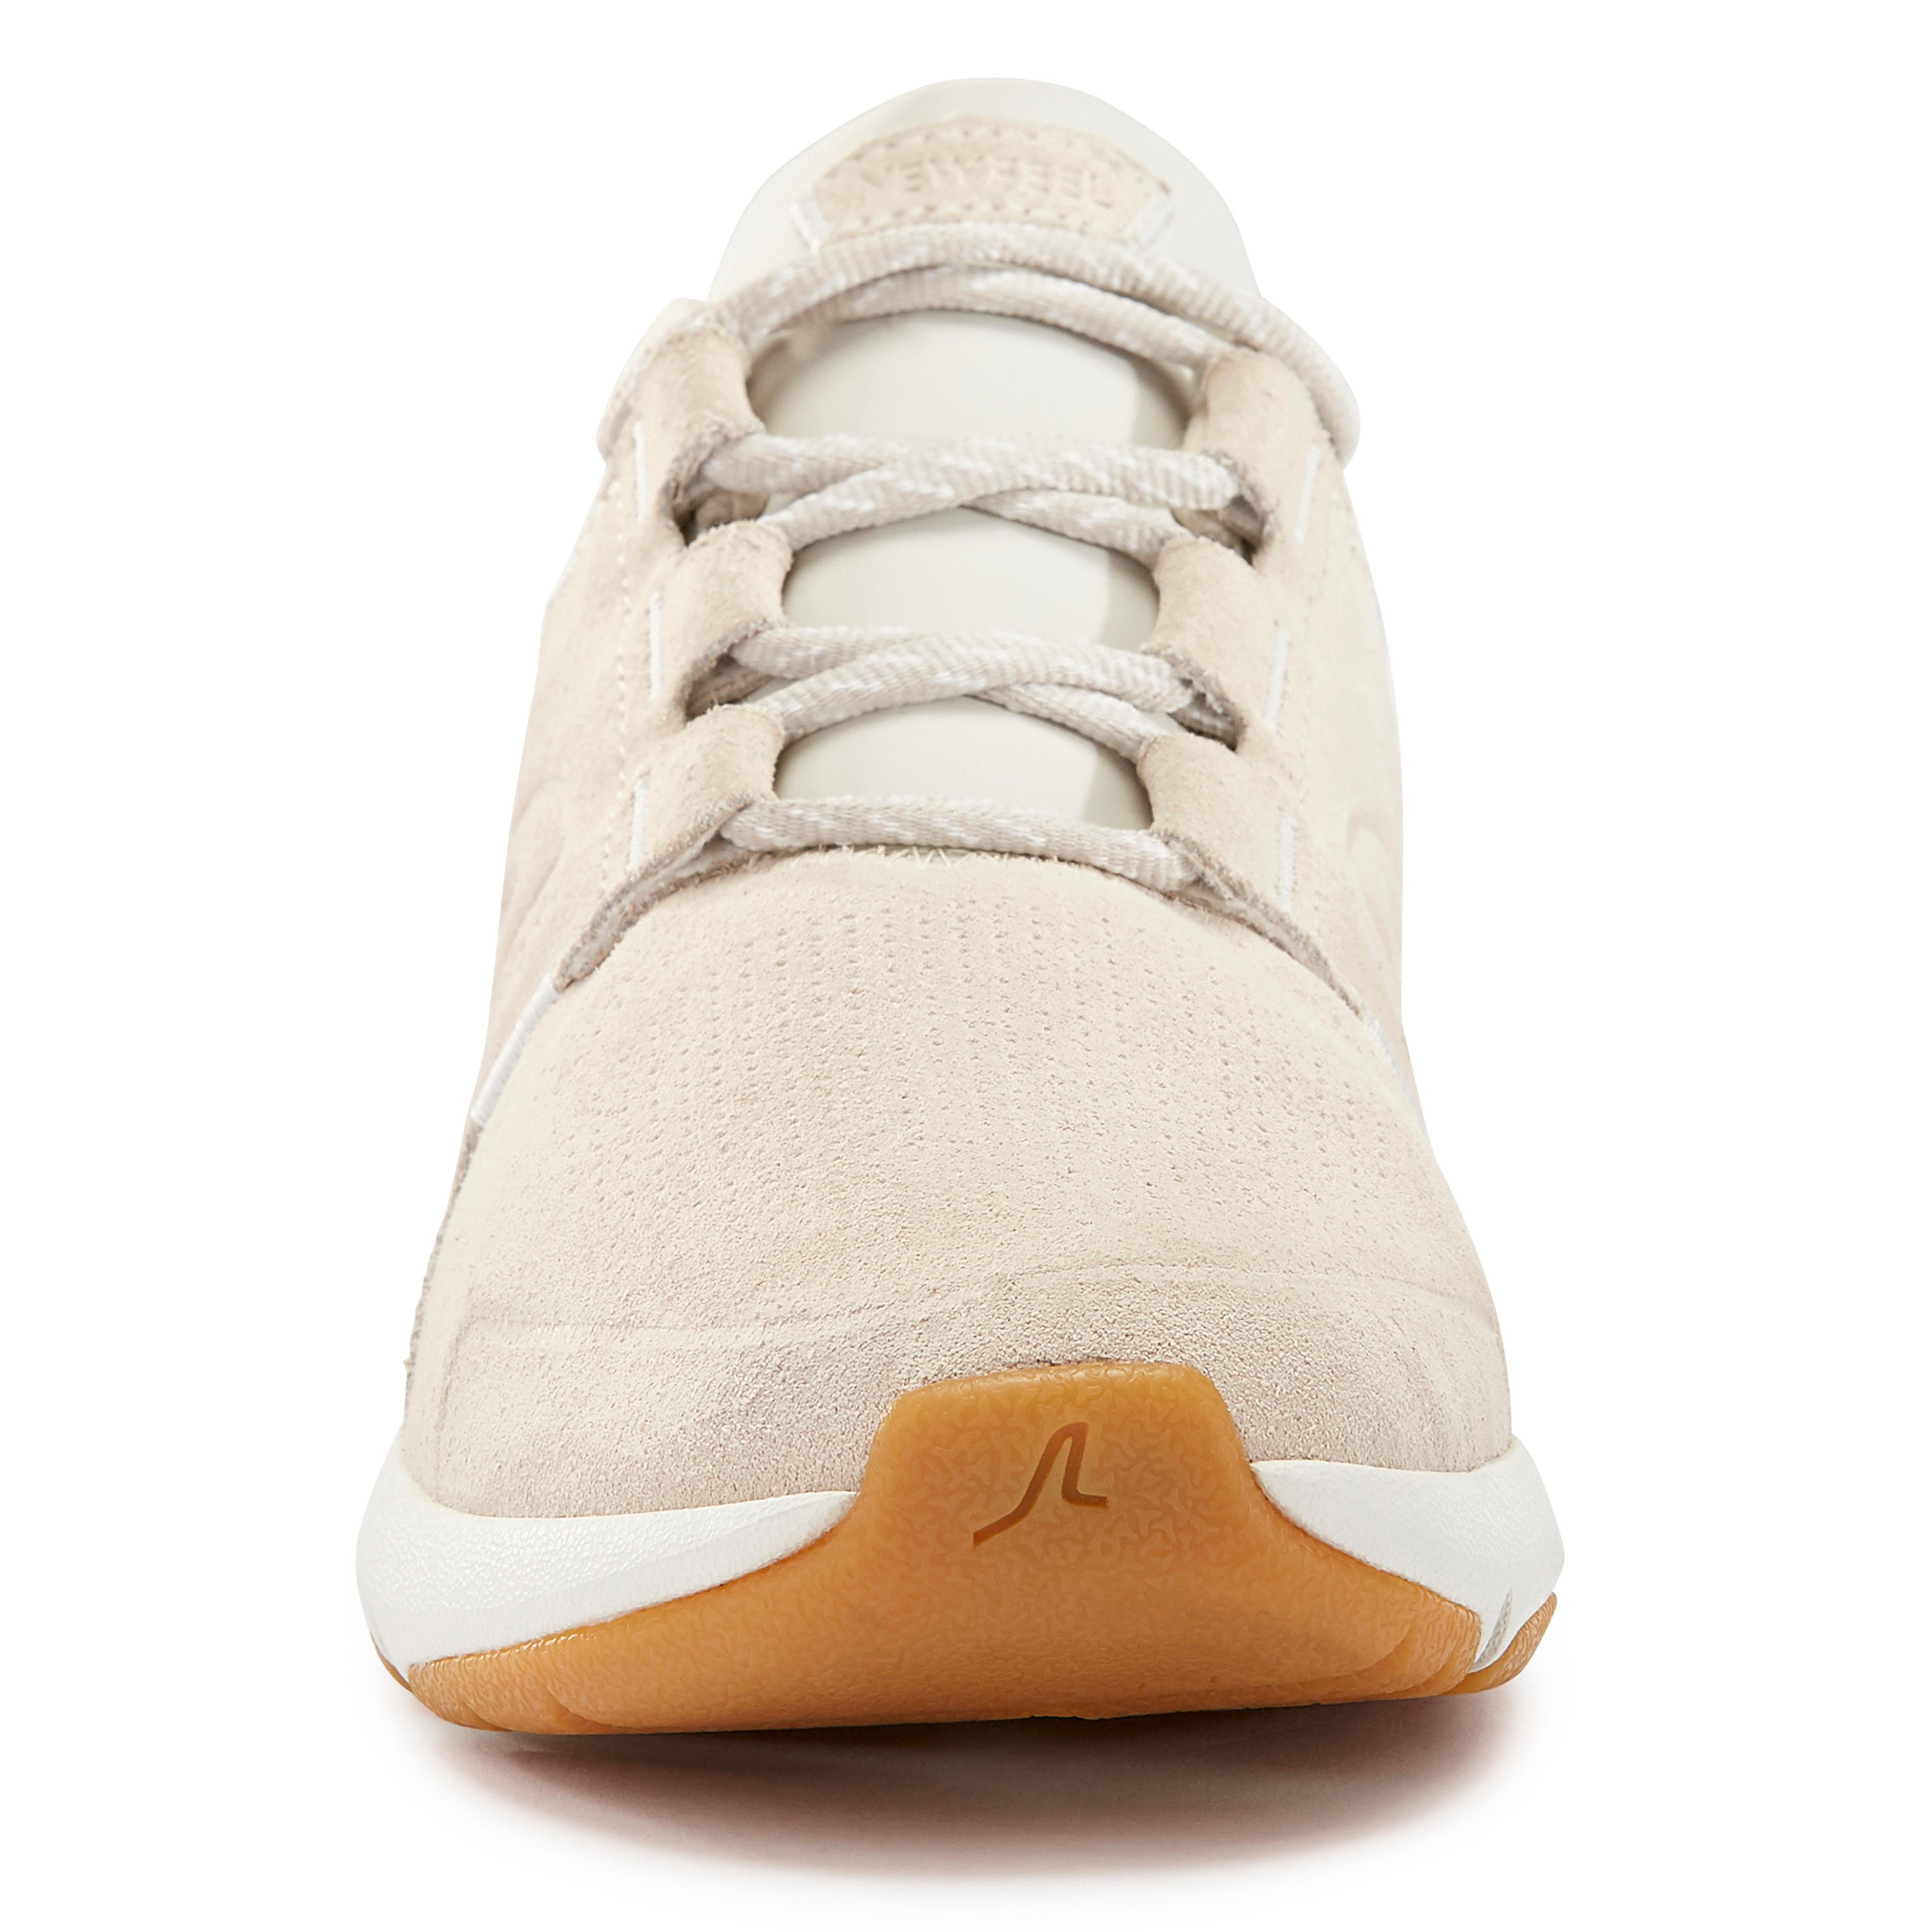 Women's City Walking Shoes Actiwalk Comfort Leather - beige 26/35